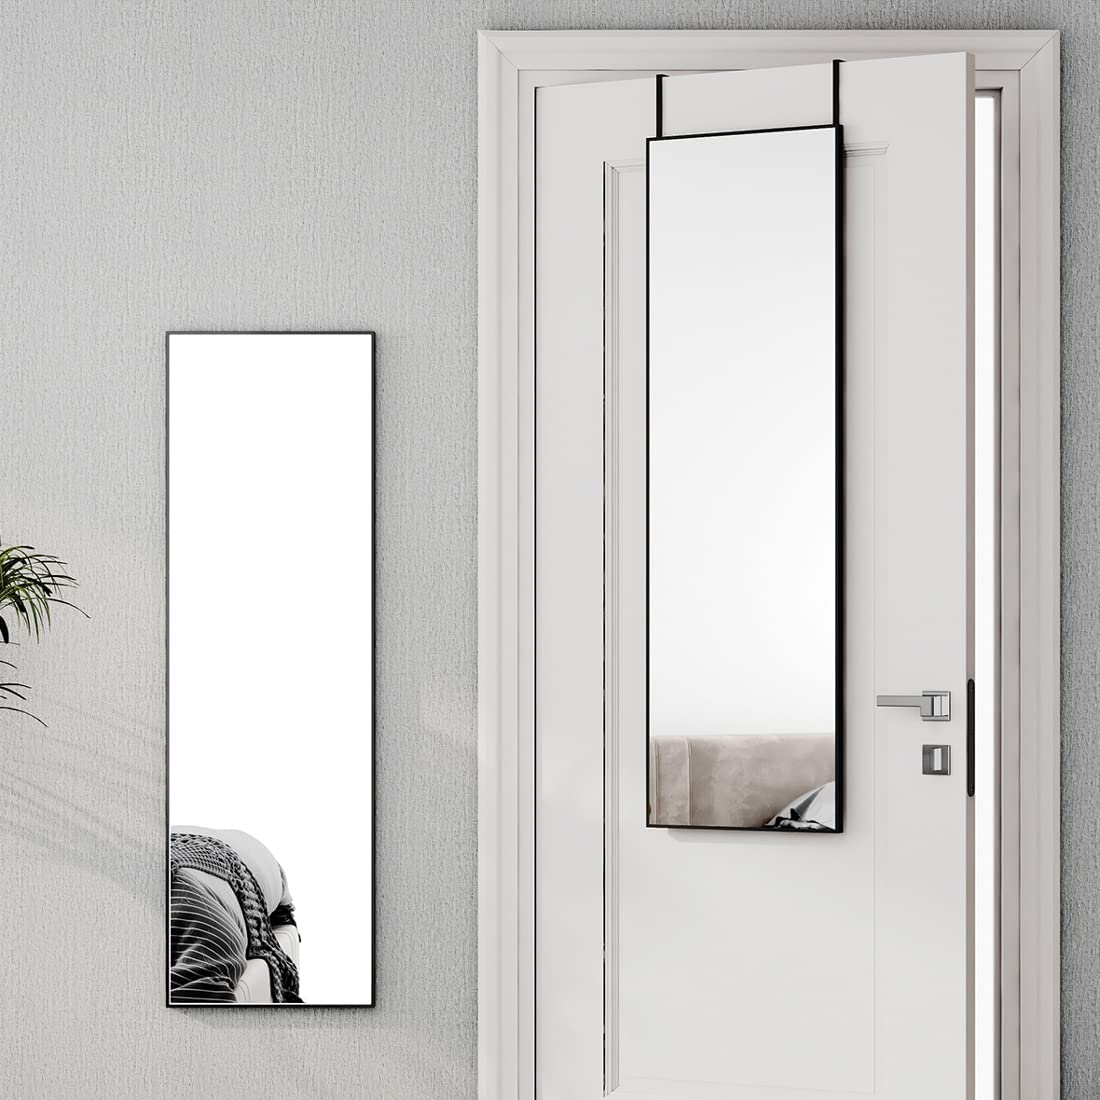 2 Montagemöglichkeiten: Dieser elegante Ganzkörperspiegel passt perfekt in Ihr Zuhause. In 120 cm Höhe (FM02AHB & FM02AHC) kann er an der Wand montiert oder einfach an jede Tür gehängt werden